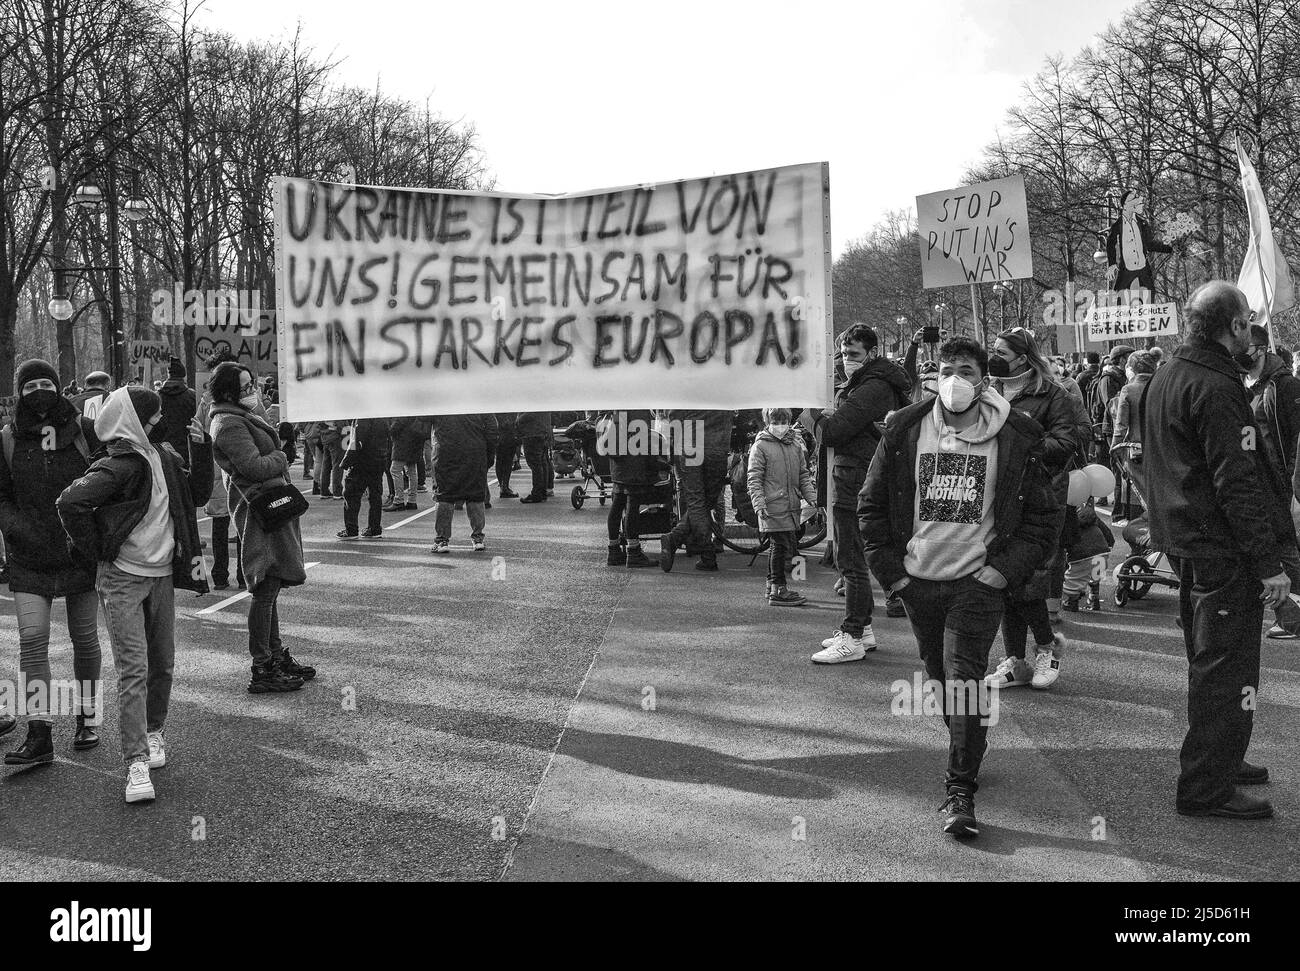 Alemania, Berlín, 27 de febrero de 2022. Manifestación contra Putin y la invasión rusa de Ucrania en Berlín el 27 de febrero de 2022. Banner [traducción automática] Foto de stock